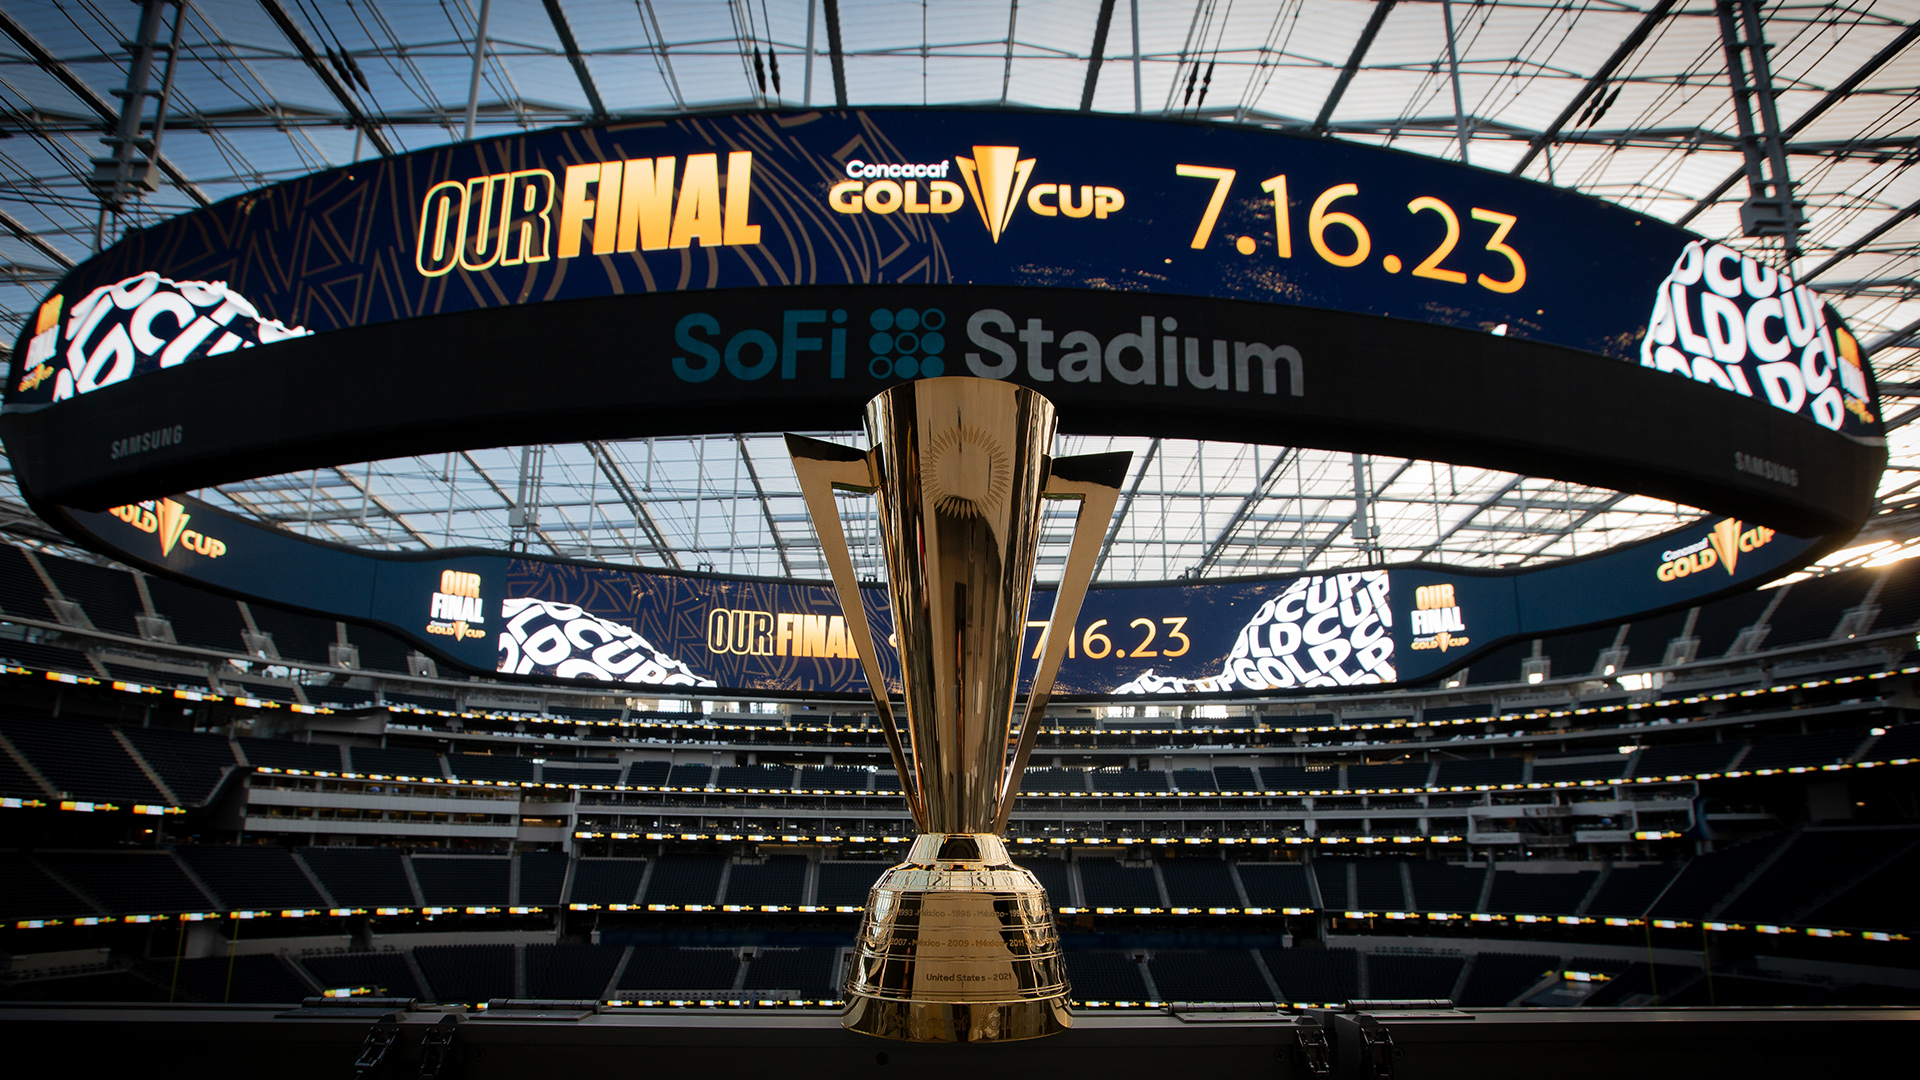 SoFi Stadium será la sede de la Final de la Copa Oro 2023. Noticias en tiempo real